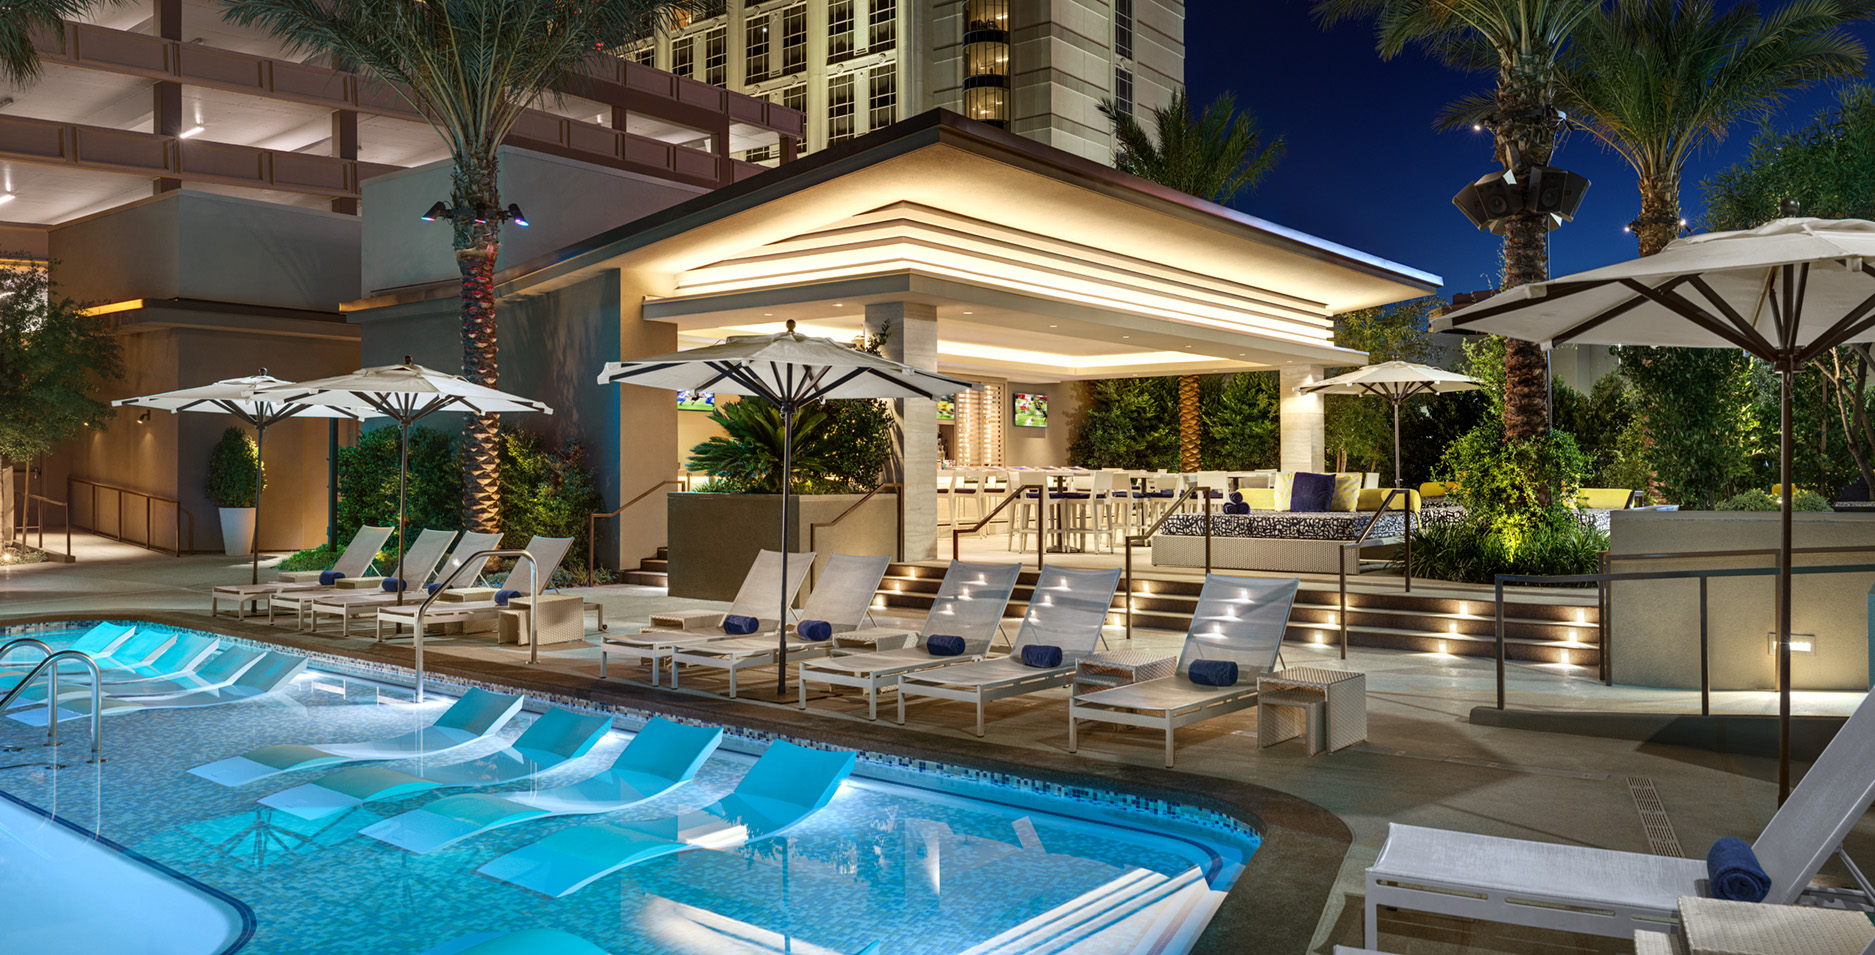 Pool á Paris: Paris Las Vegas Pool Hours, Prices 2023